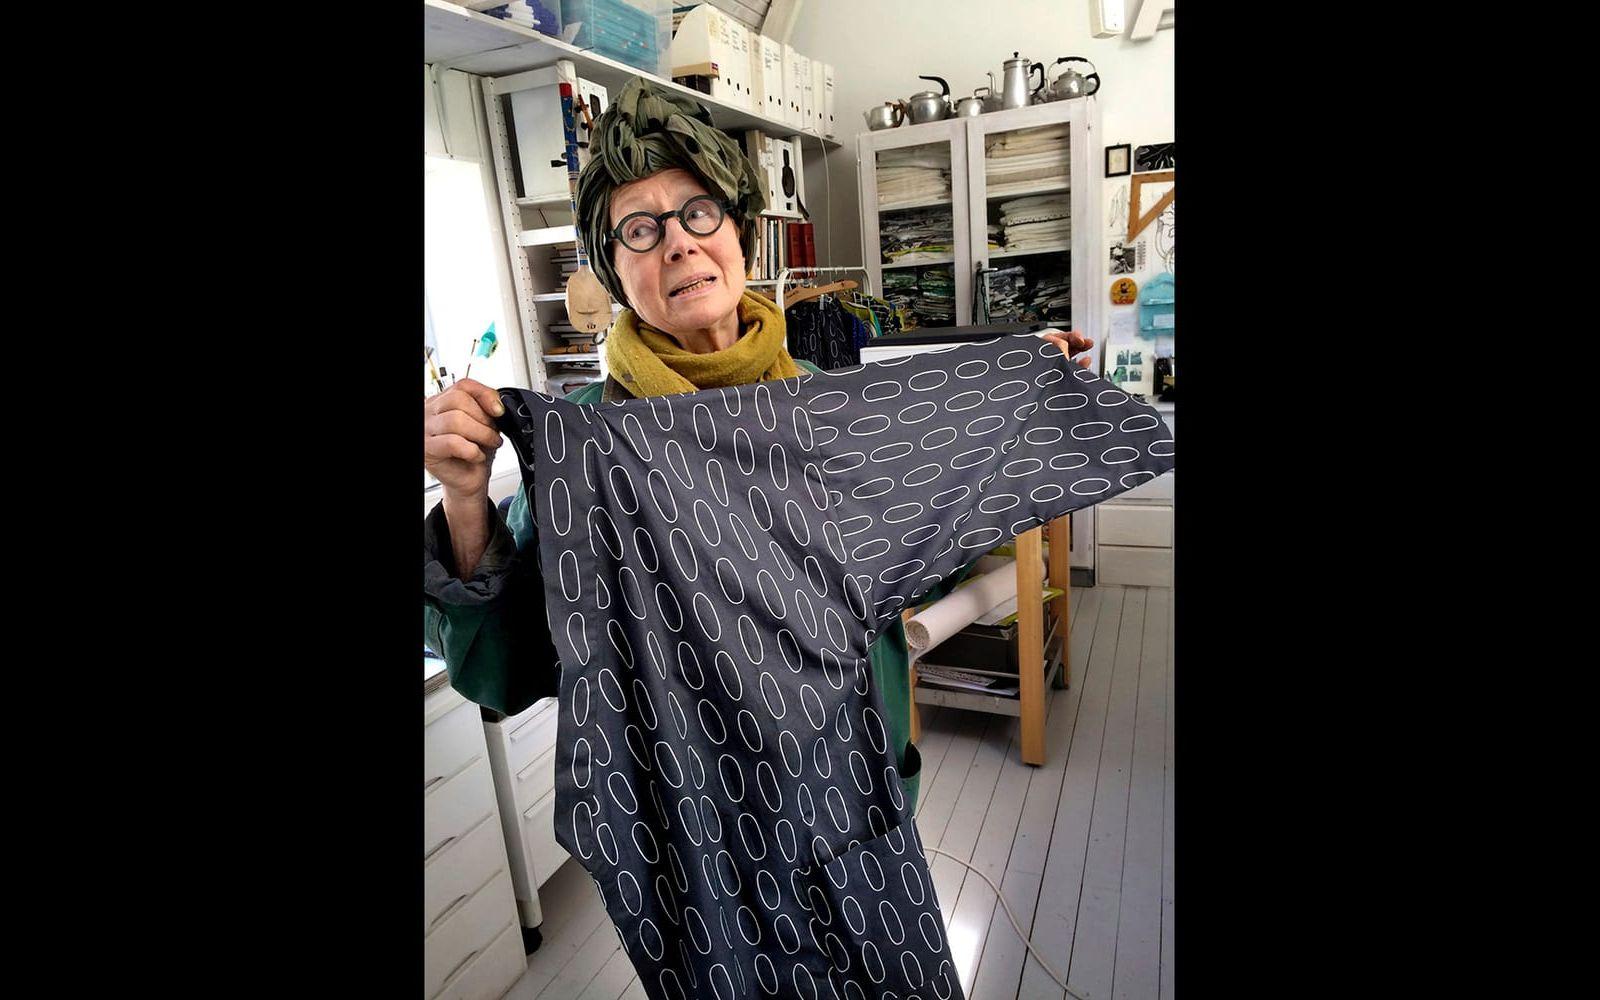 Formgivaren Gunila Axén producerar även kläder. Här visar hon en kimmono ur hennes kollektion. Foto: Lisa Wallström/TT